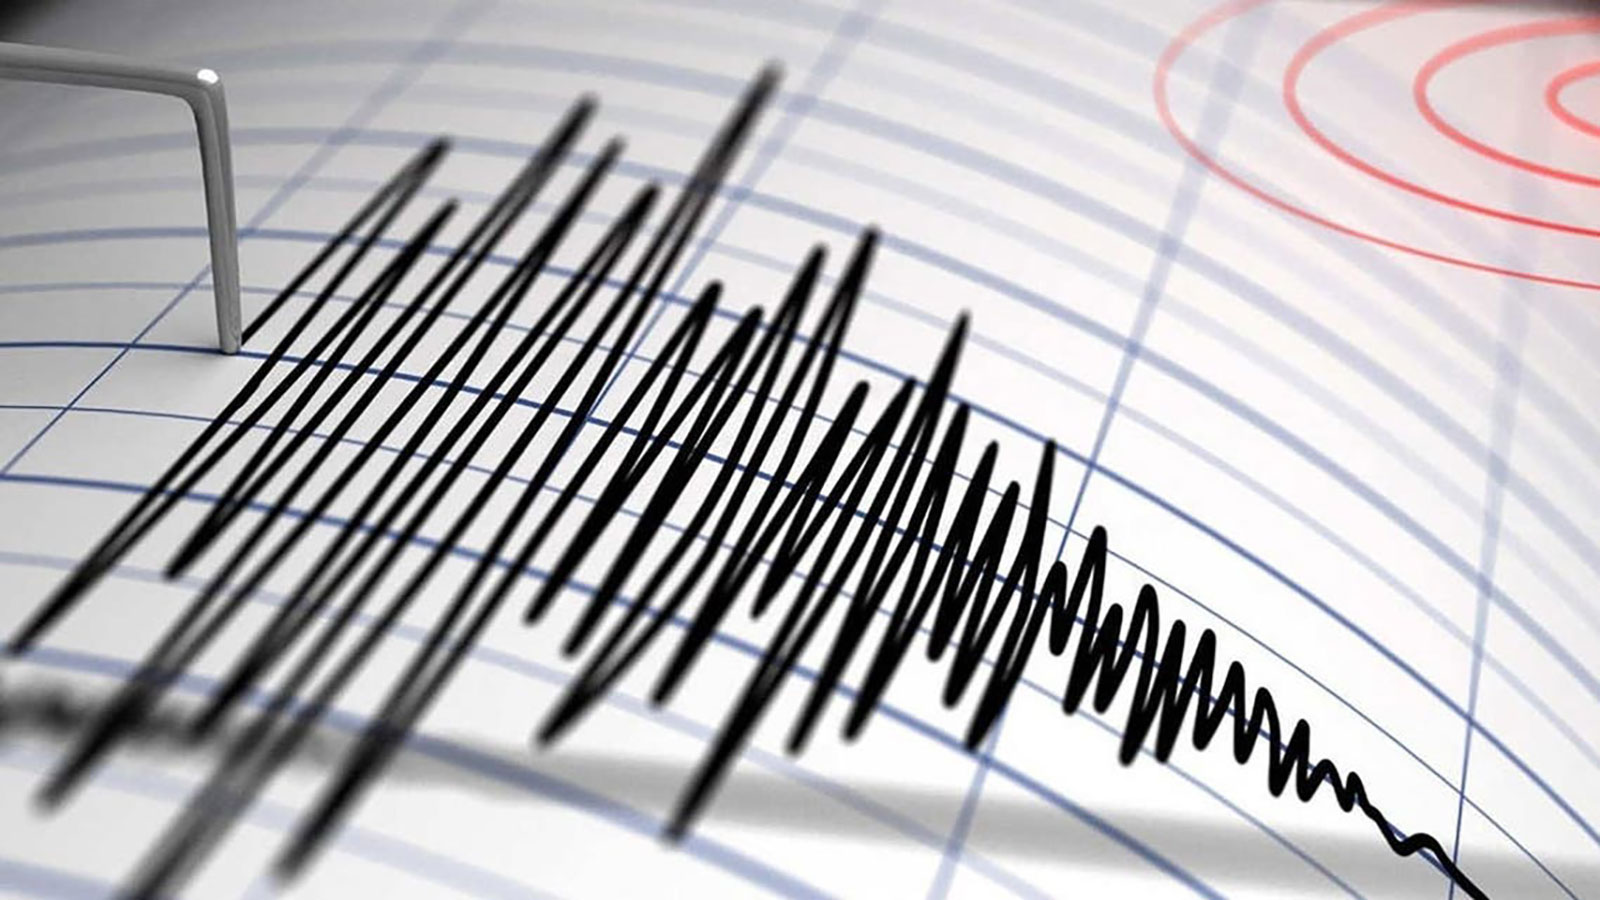 زلزال بقوة 7.3 درجات يضرب إندونيسيا وتحذيرات من تسونامي